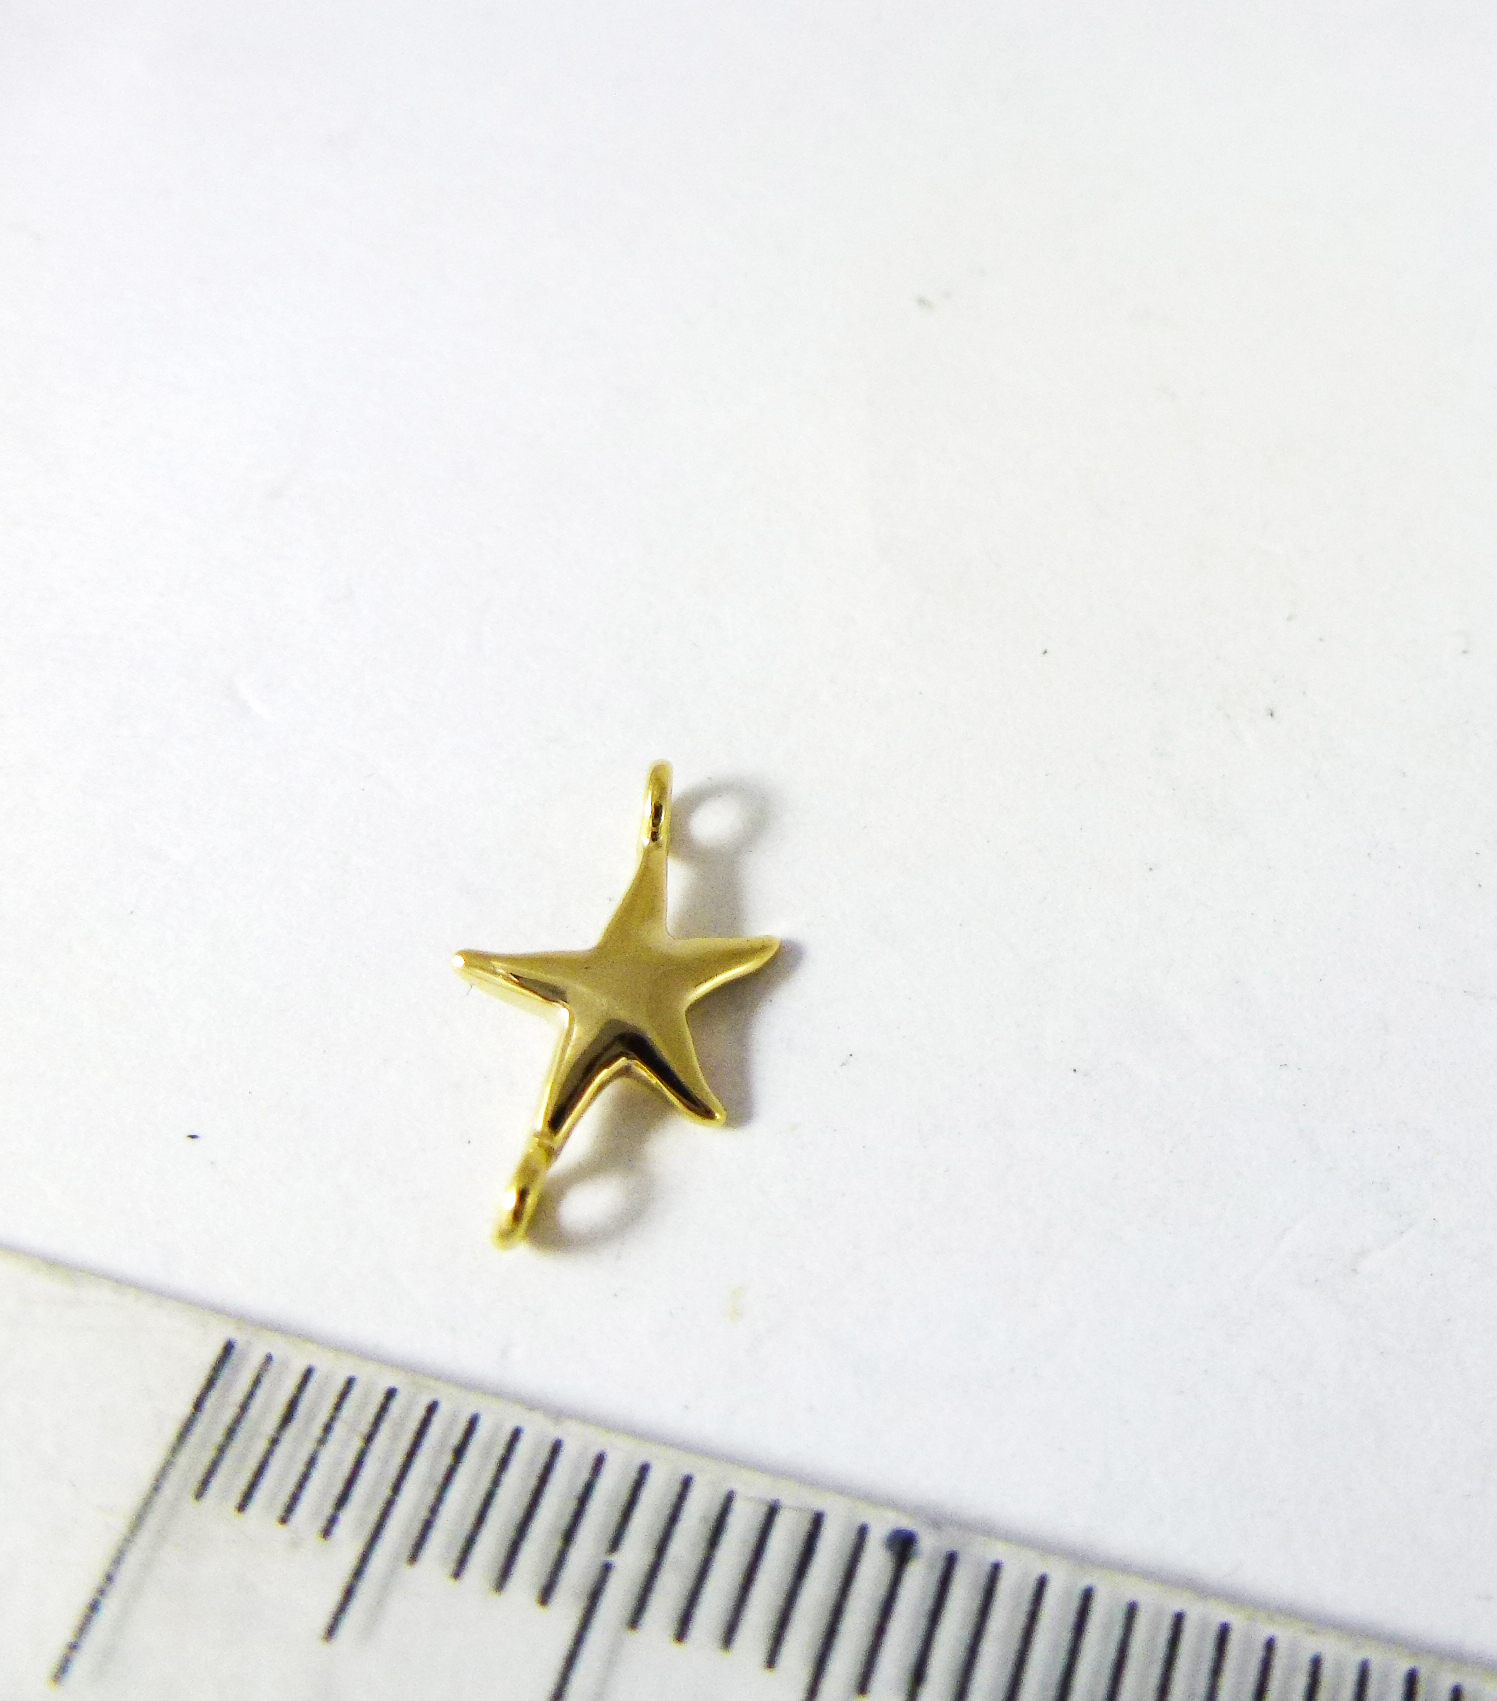 8mm銅鍍金色雙孔海星